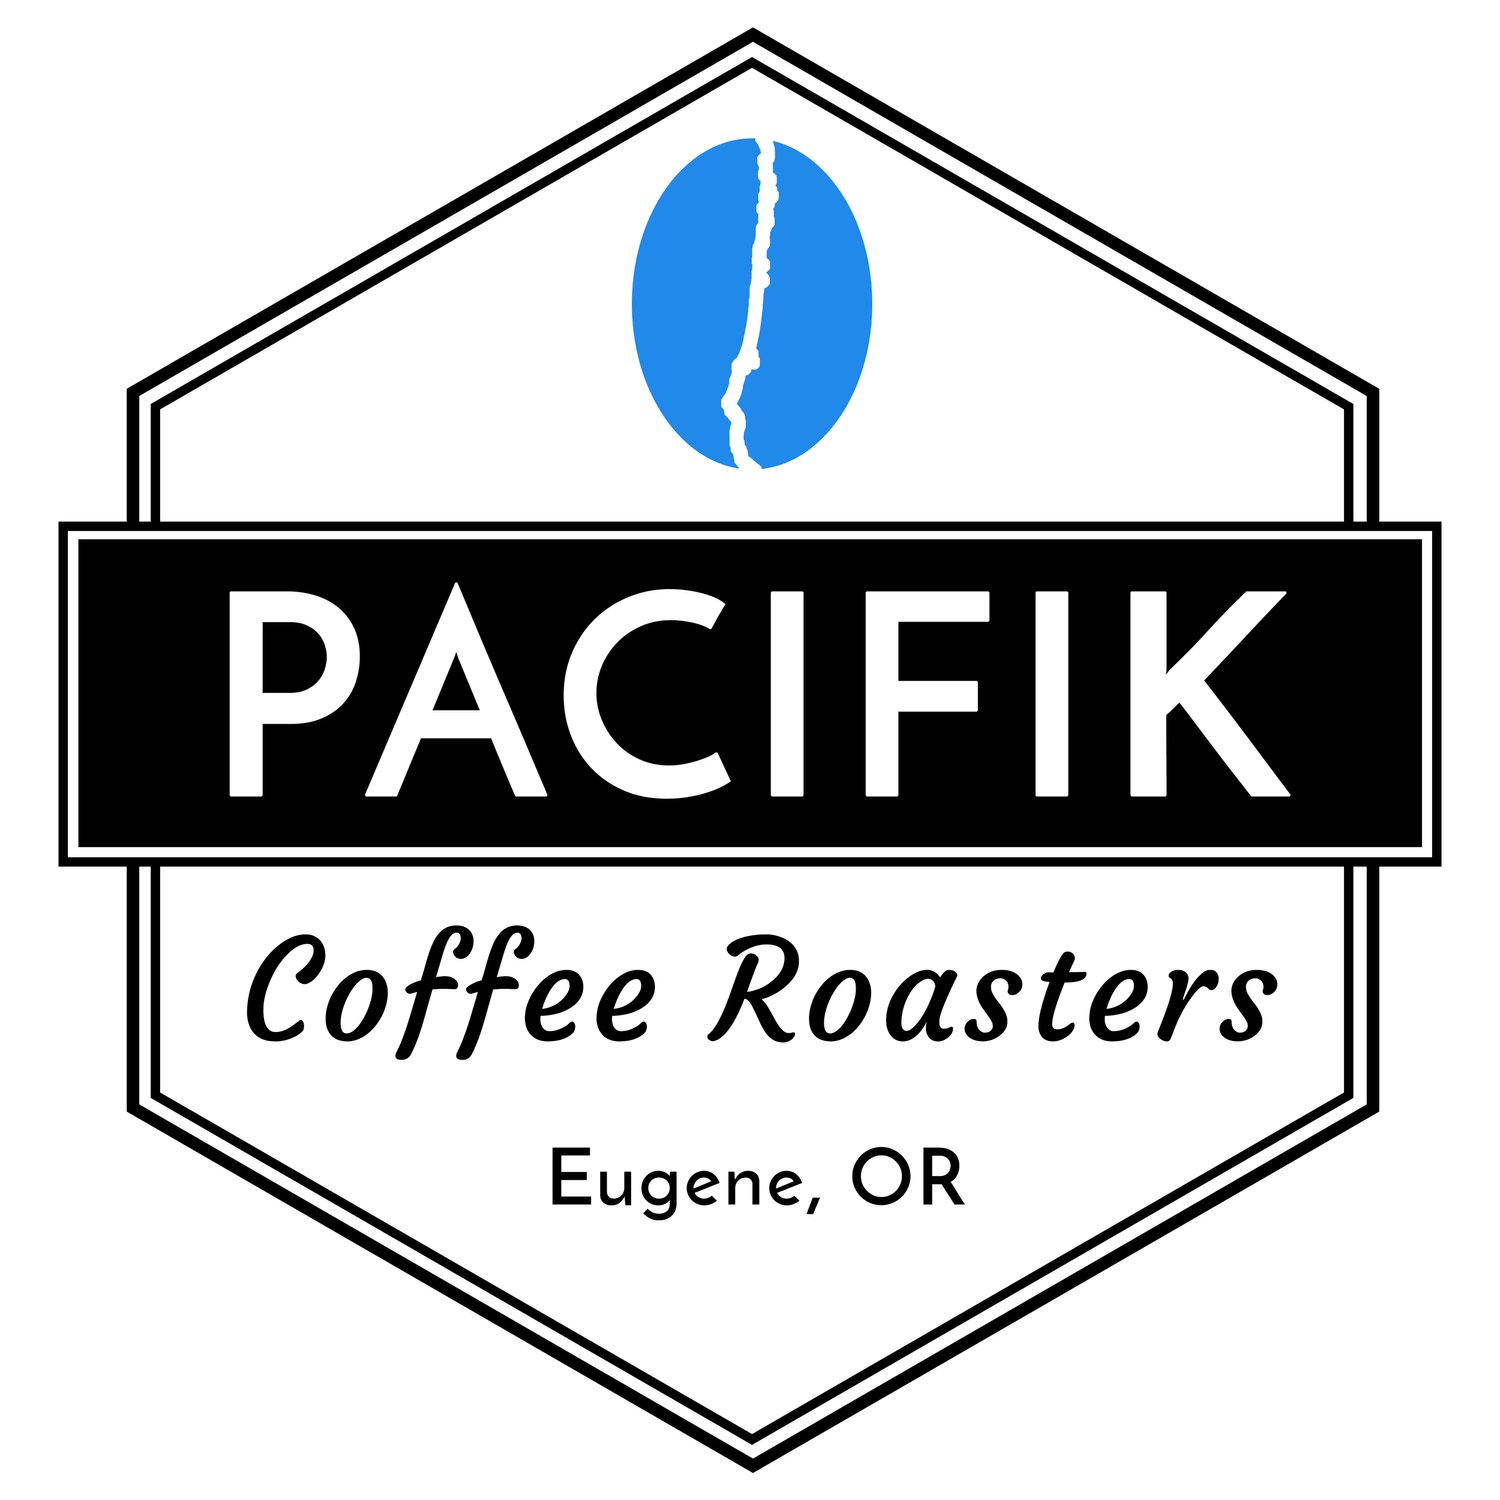 Pacifik Coffee Roasters